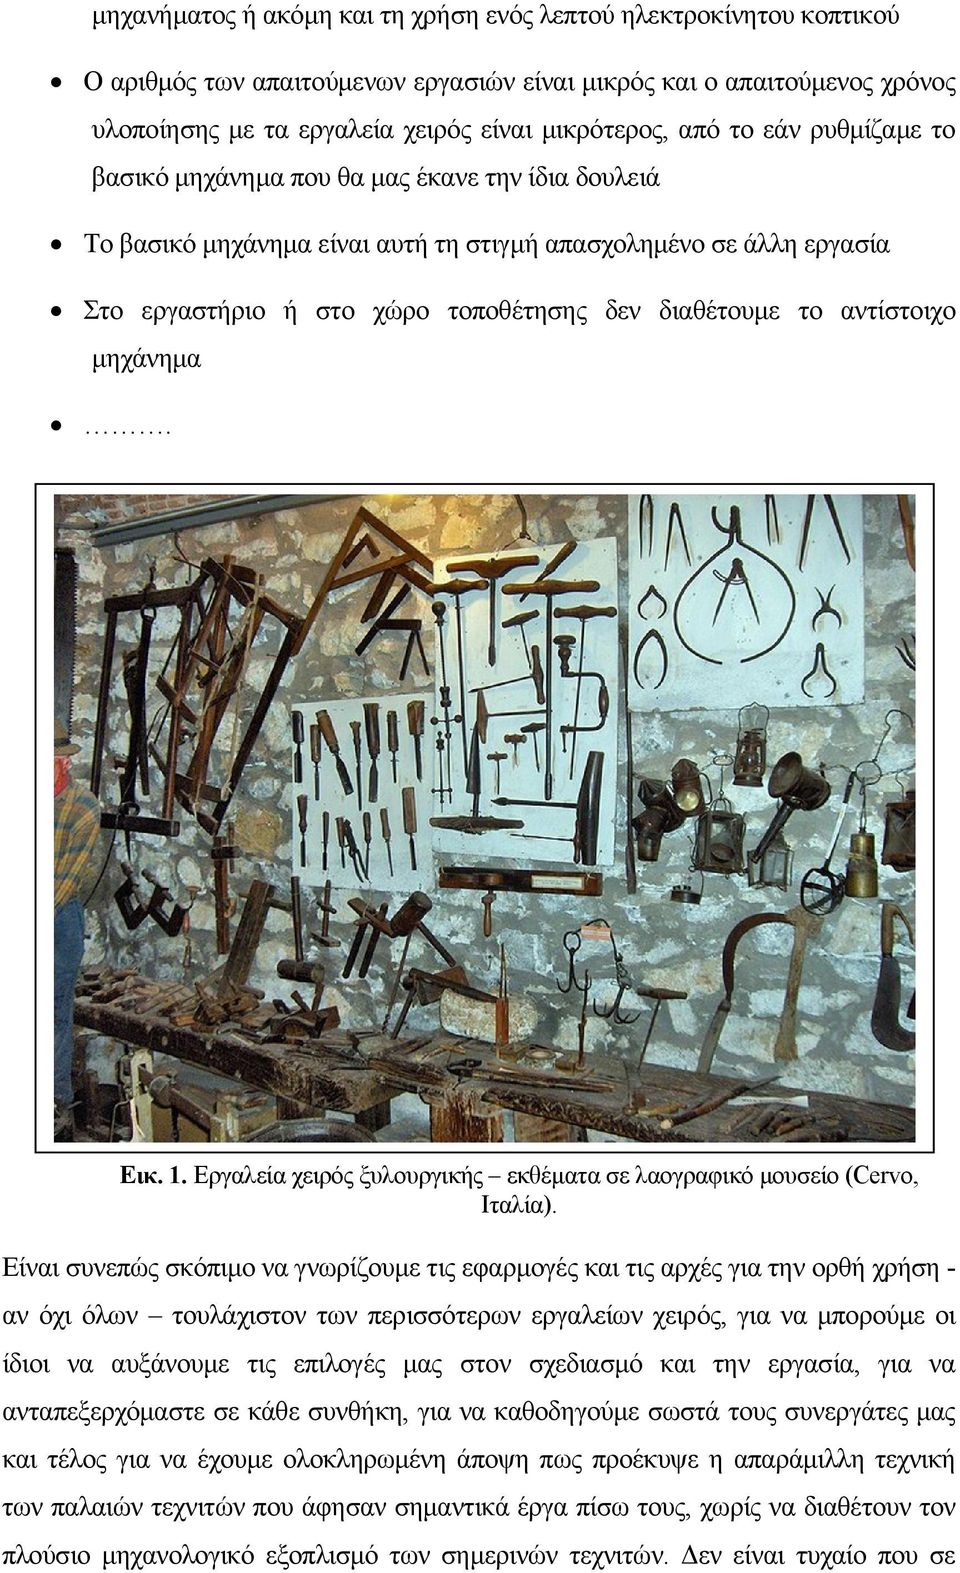 αντίστοιχο μηχάνημα. Εικ. 1. Εργαλεία χειρός ξυλουργικής εκθέματα σε λαογραφικό μουσείο (Cervo, Ιταλία).